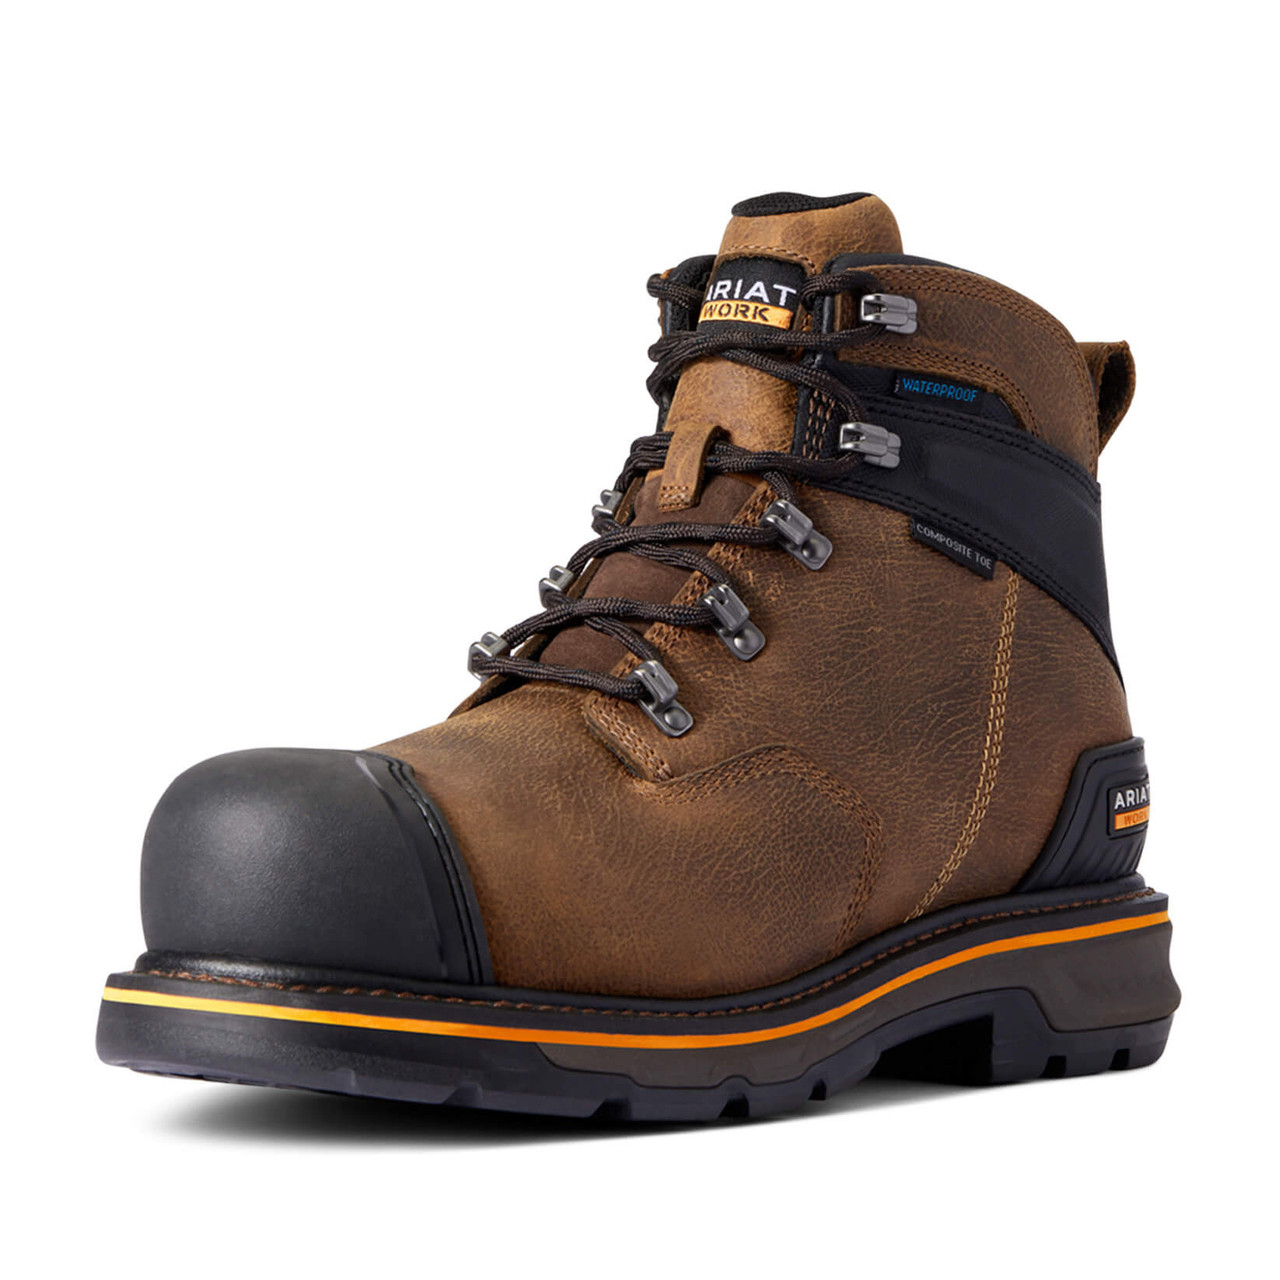 Ariat Winter Work Boots Deals | bellvalefarms.com